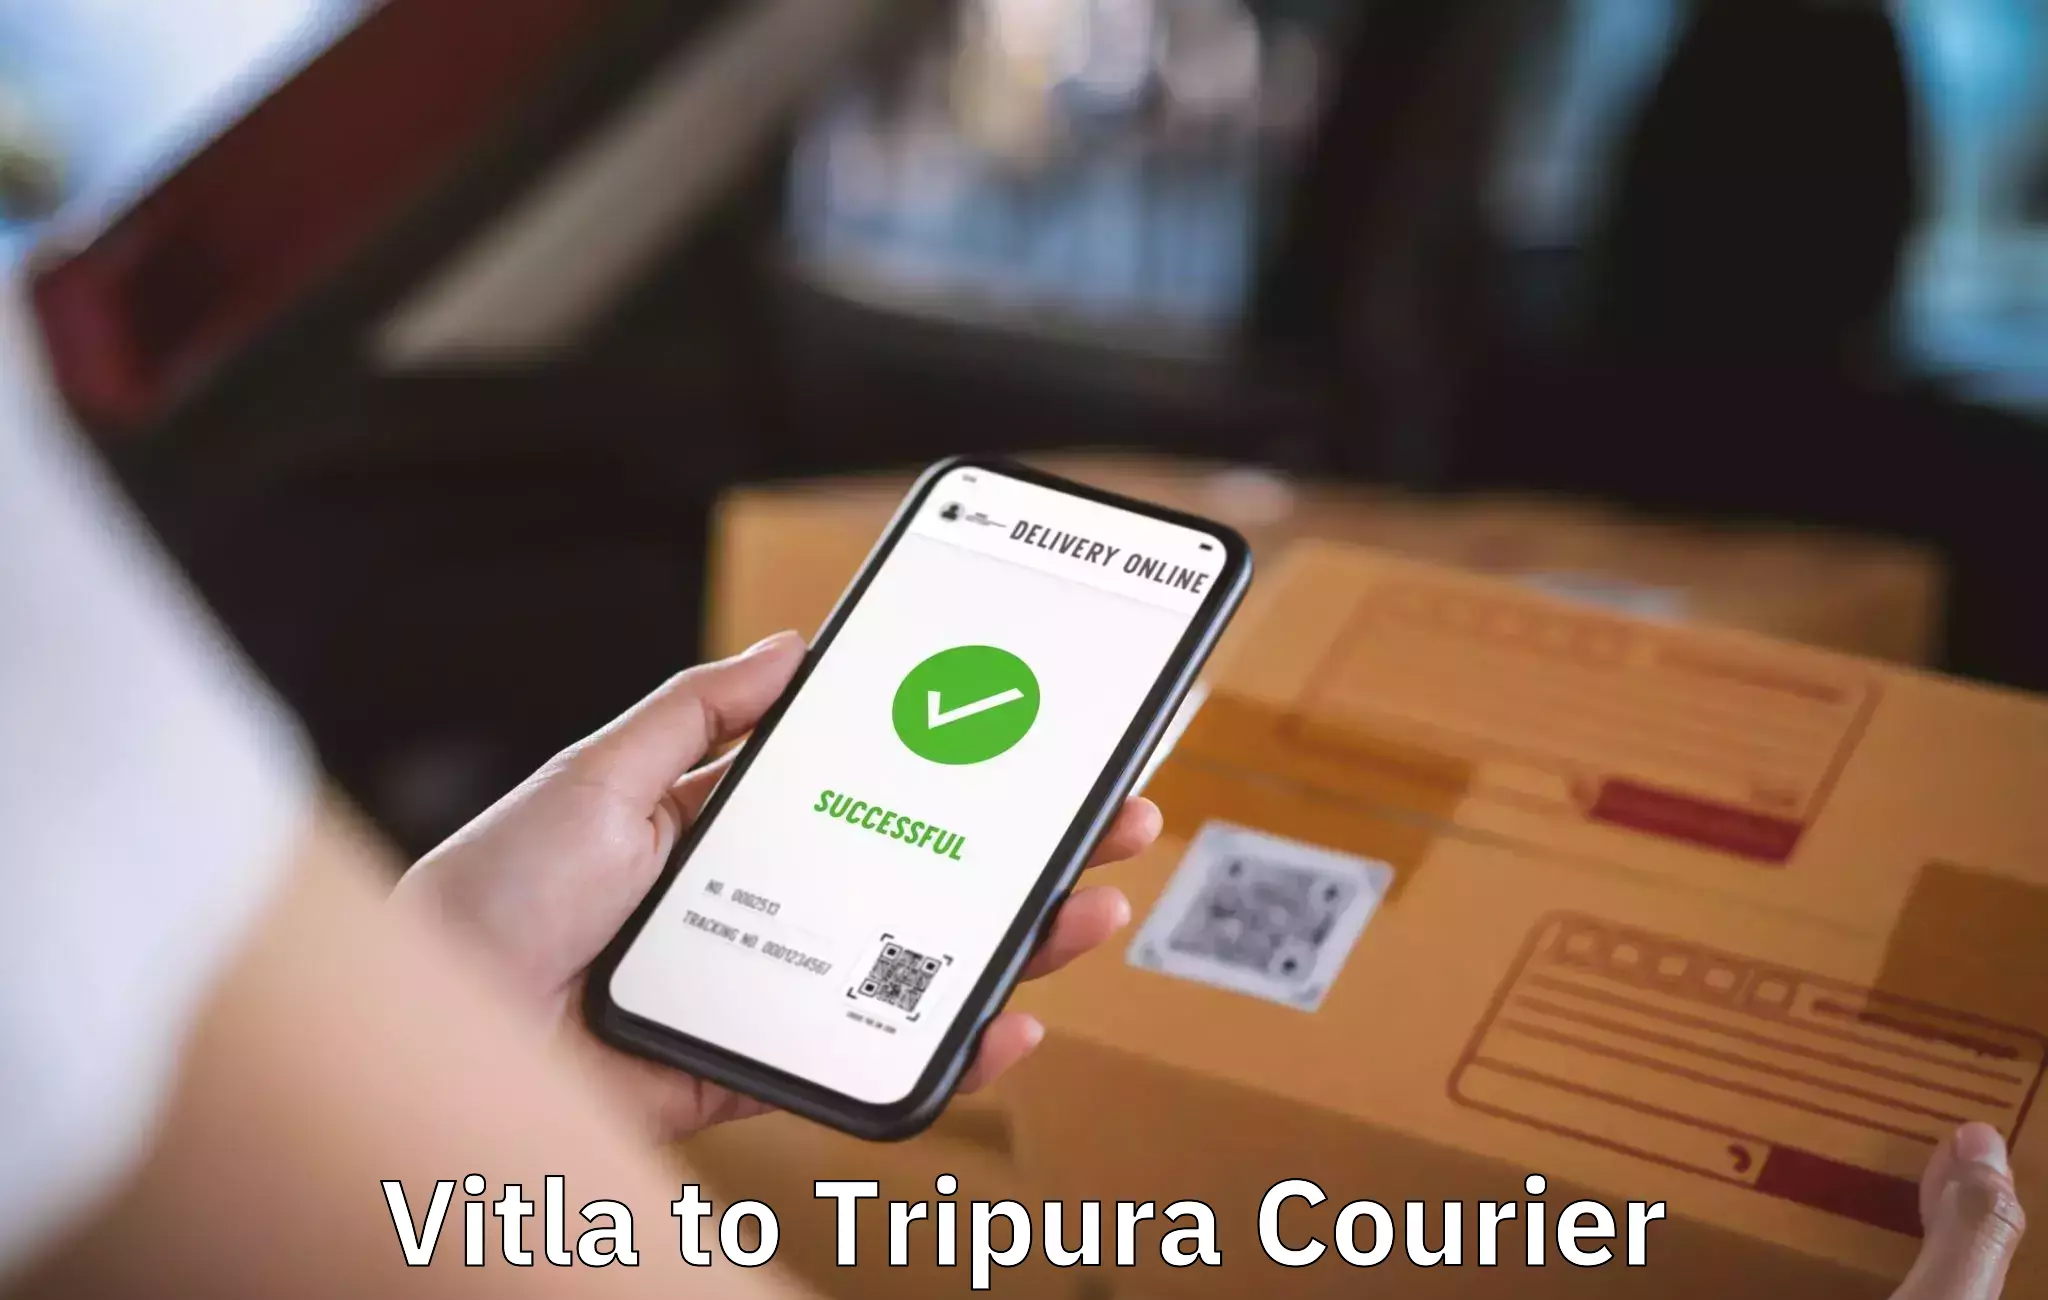 Furniture delivery service Vitla to North Tripura